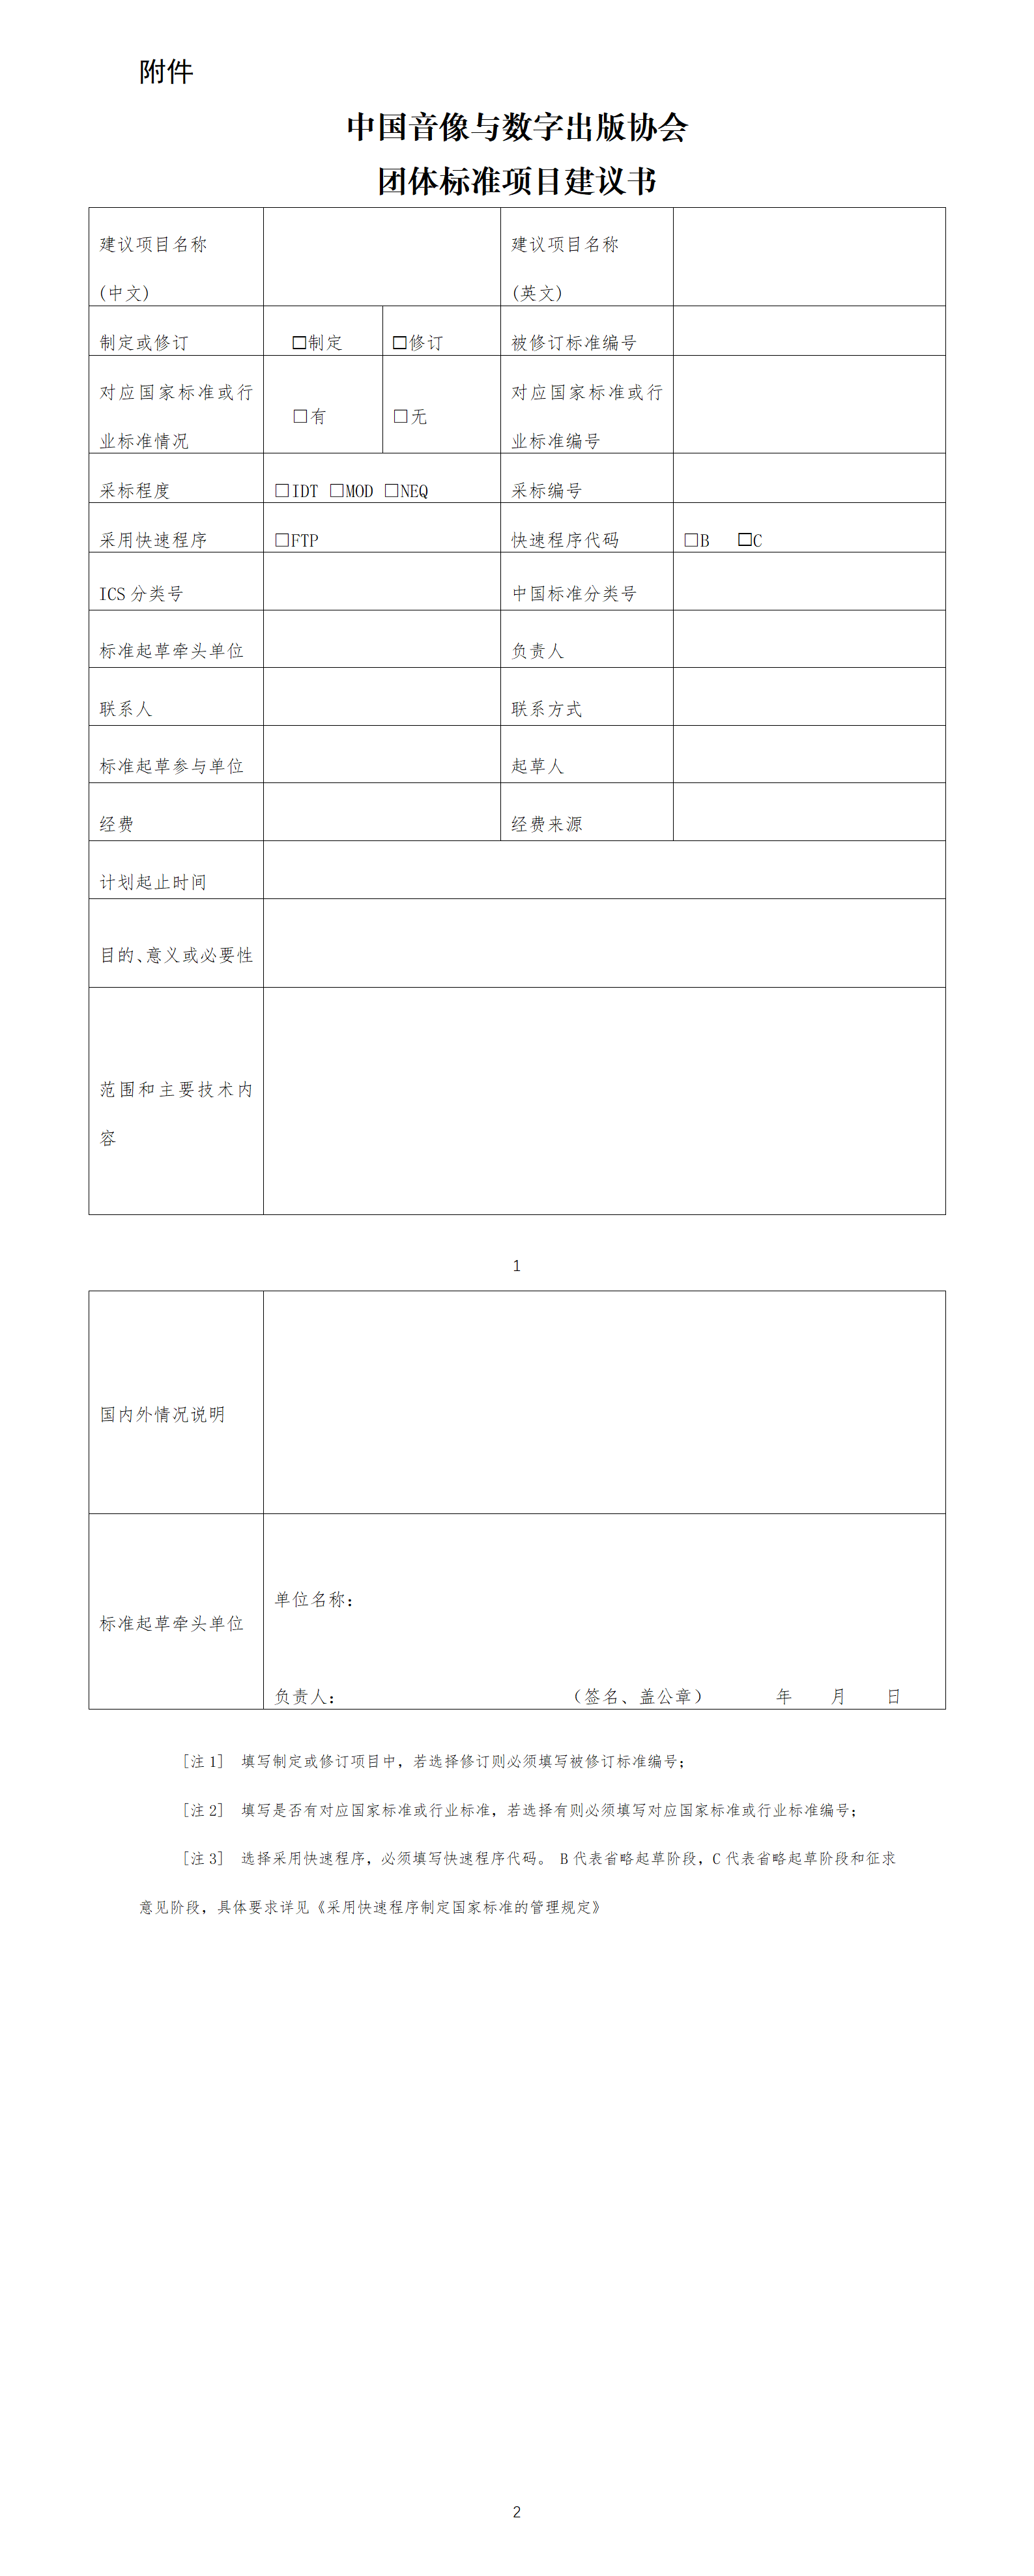 中国音像与数字出版协会团体标准项目建议书_01.png